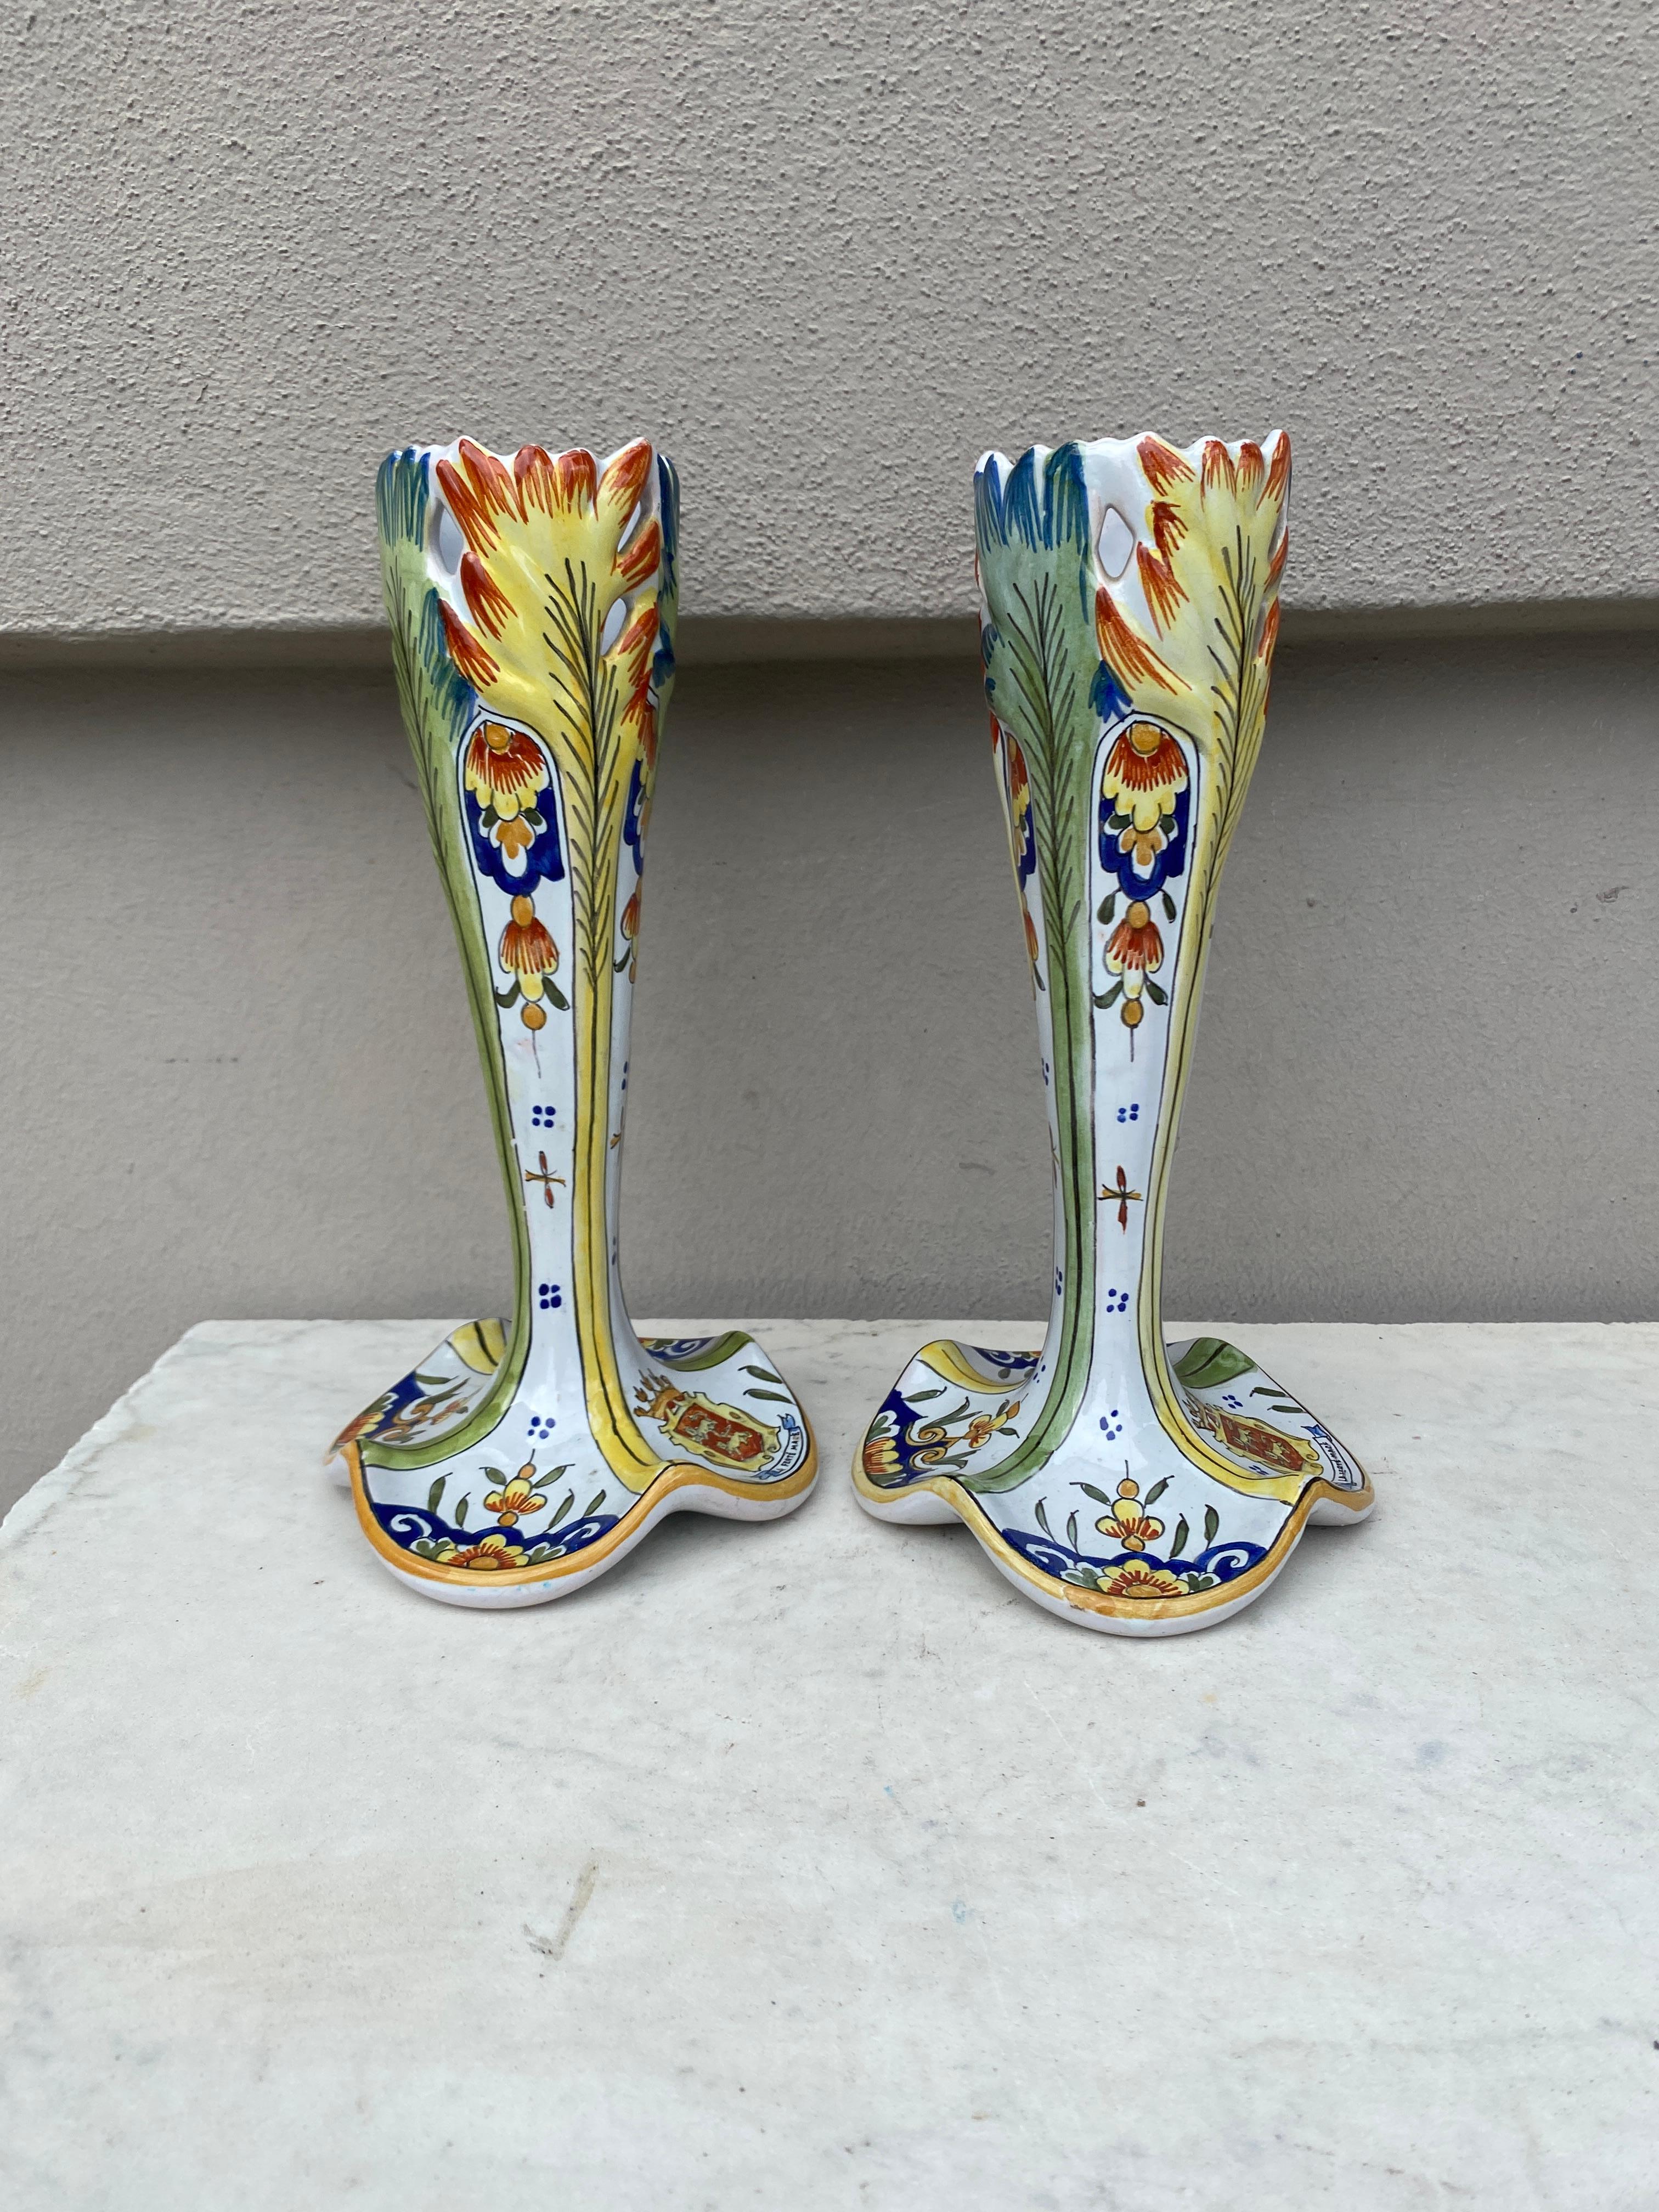 Paar französische Fayence-Vasen CIRCA 1900.
Auf der Oberseite mit Blättern verziert, auf dem Sockel mit Wappen.